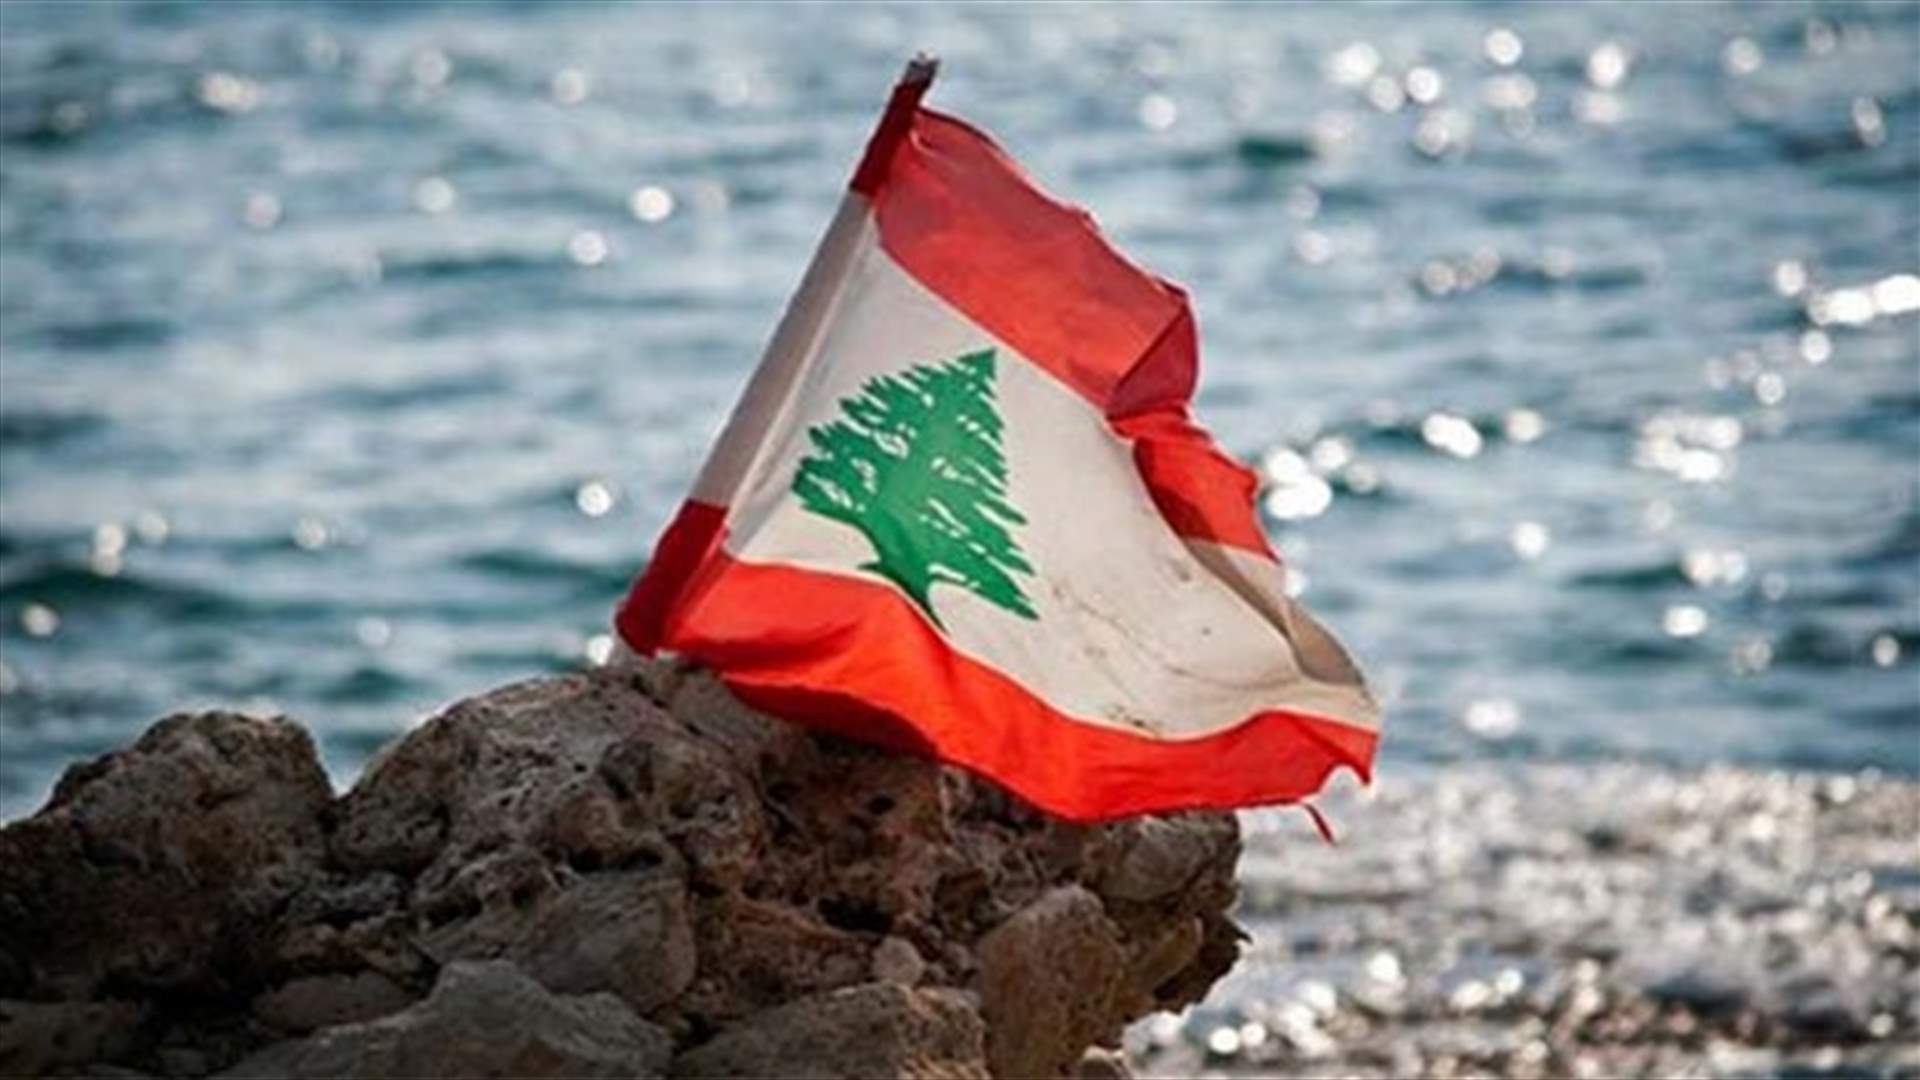 الاتحاد الأوروبي مستعد لمساعدة لبنان وشعبه لتجاوز الأزمات الصعبة...